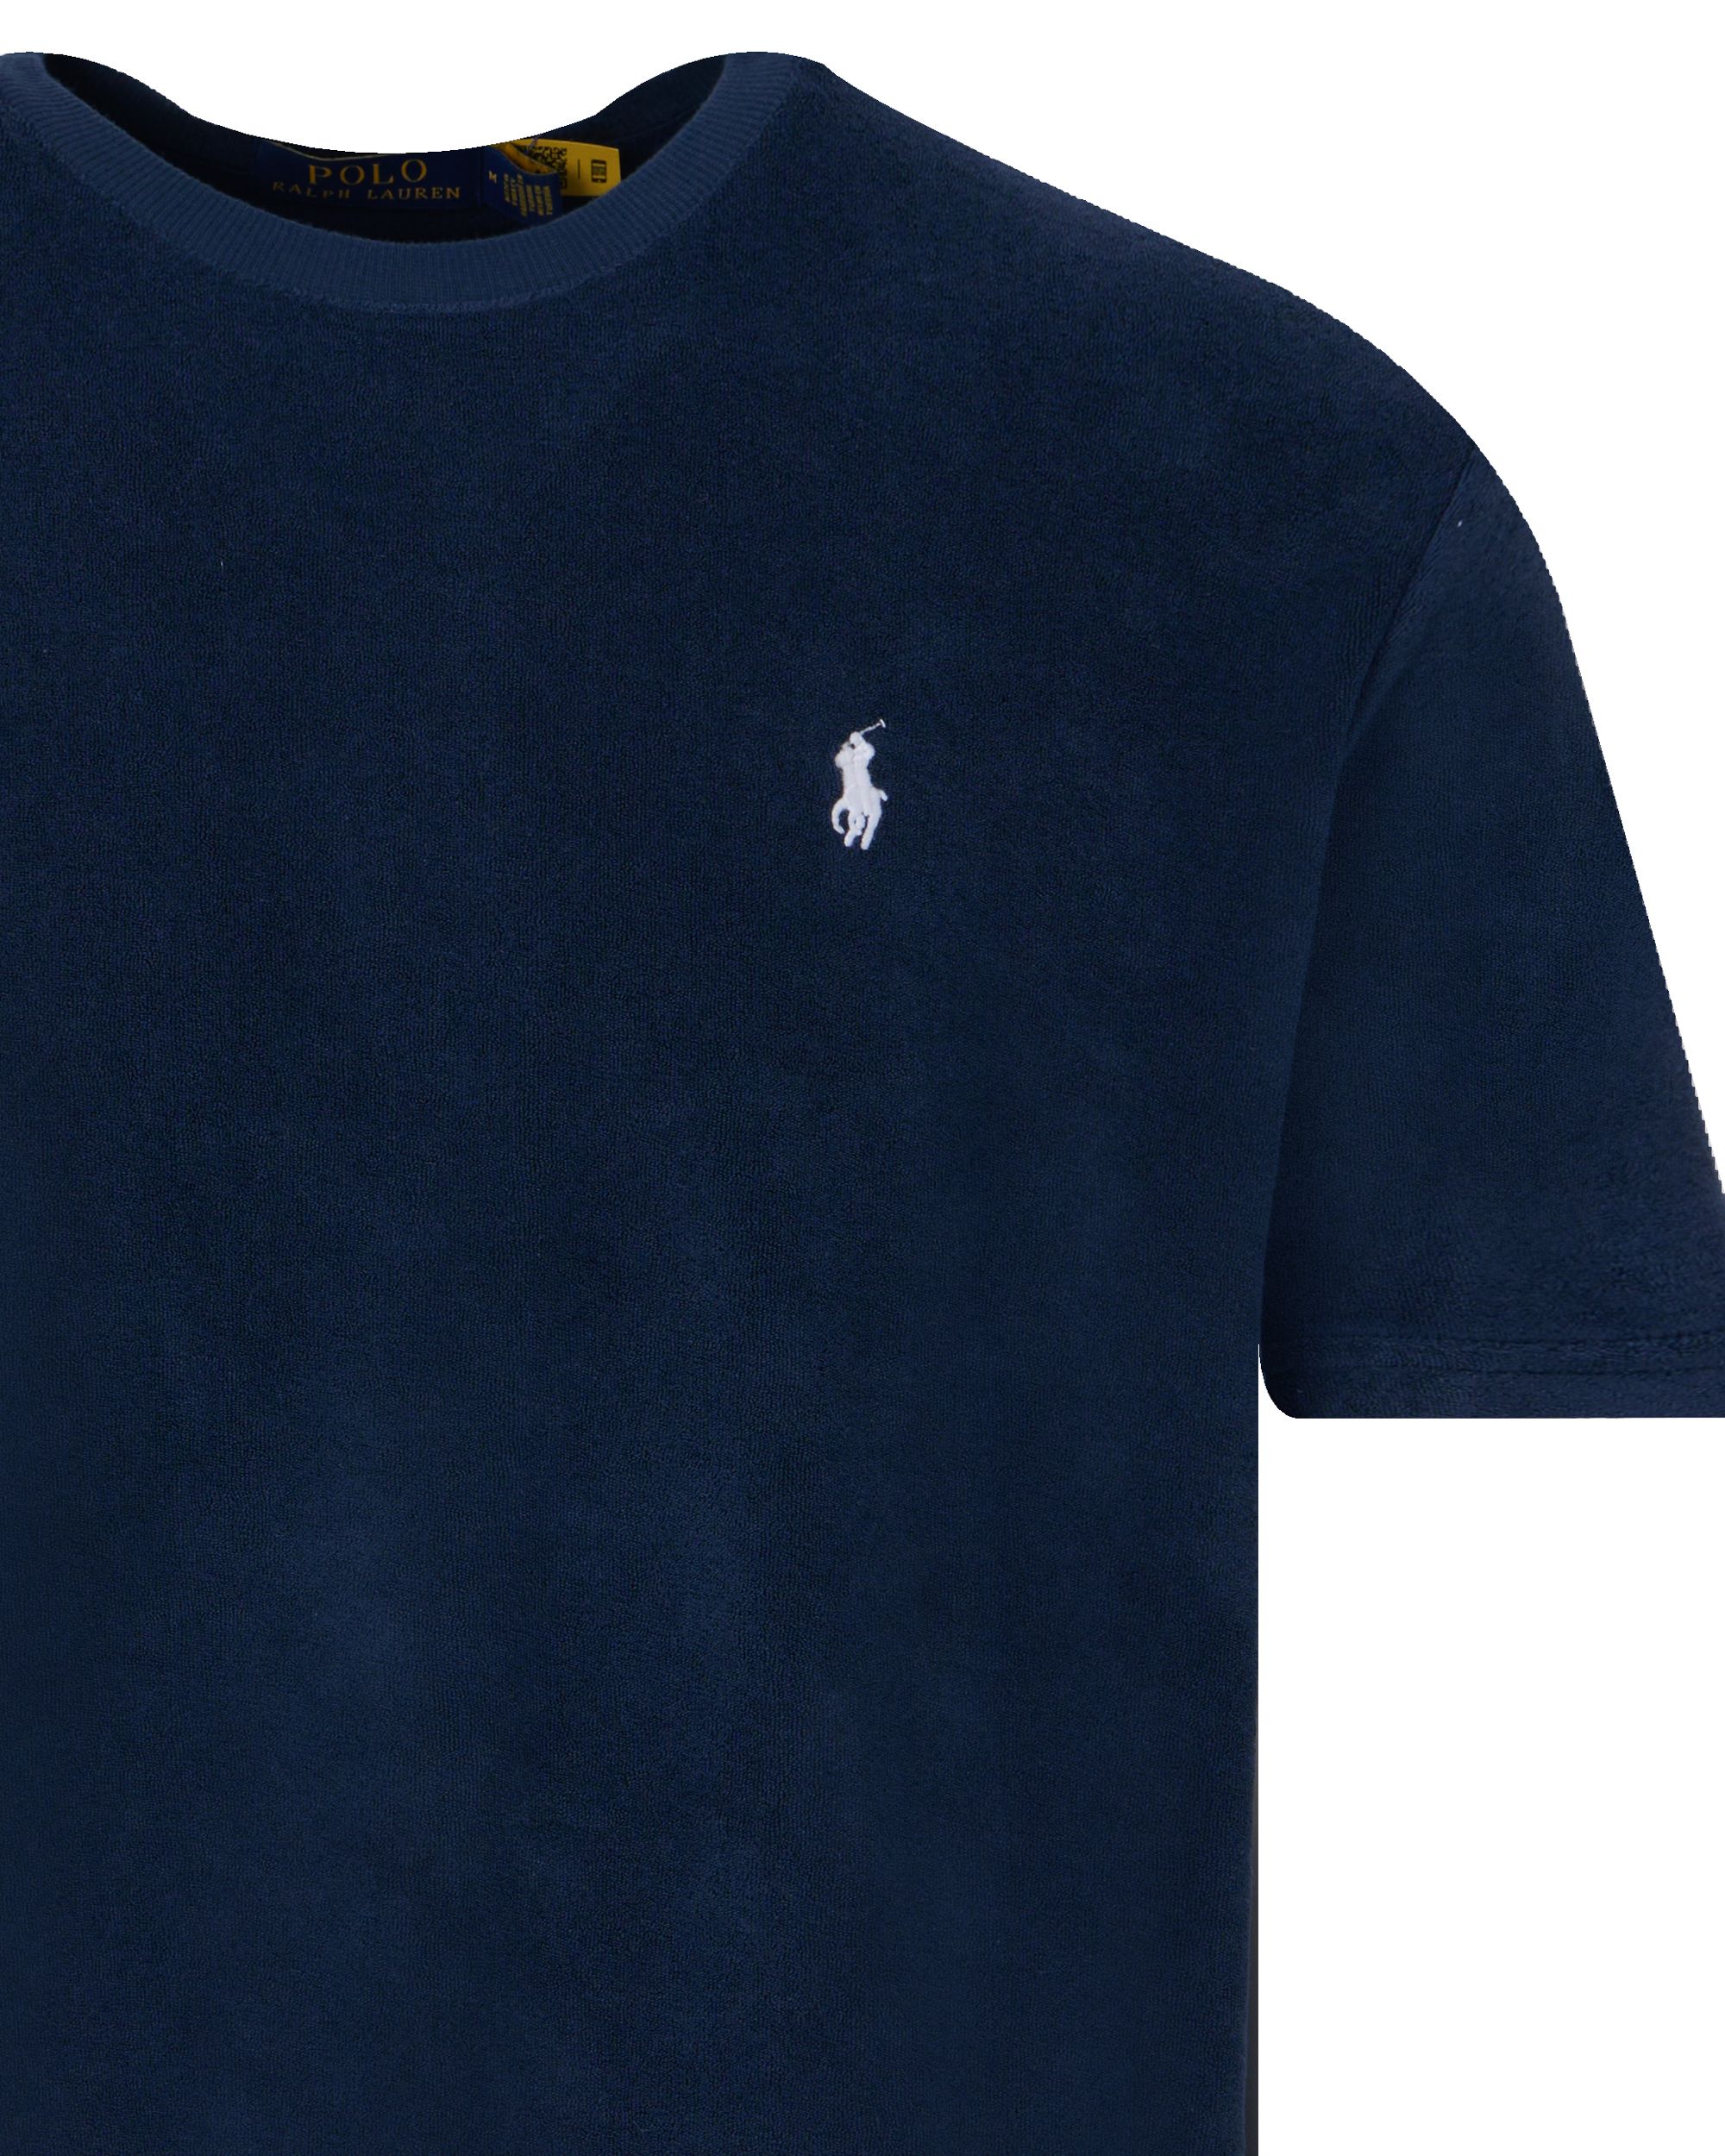 Polo Ralph Lauren T-shirt KM Donker blauw 095293-001-L